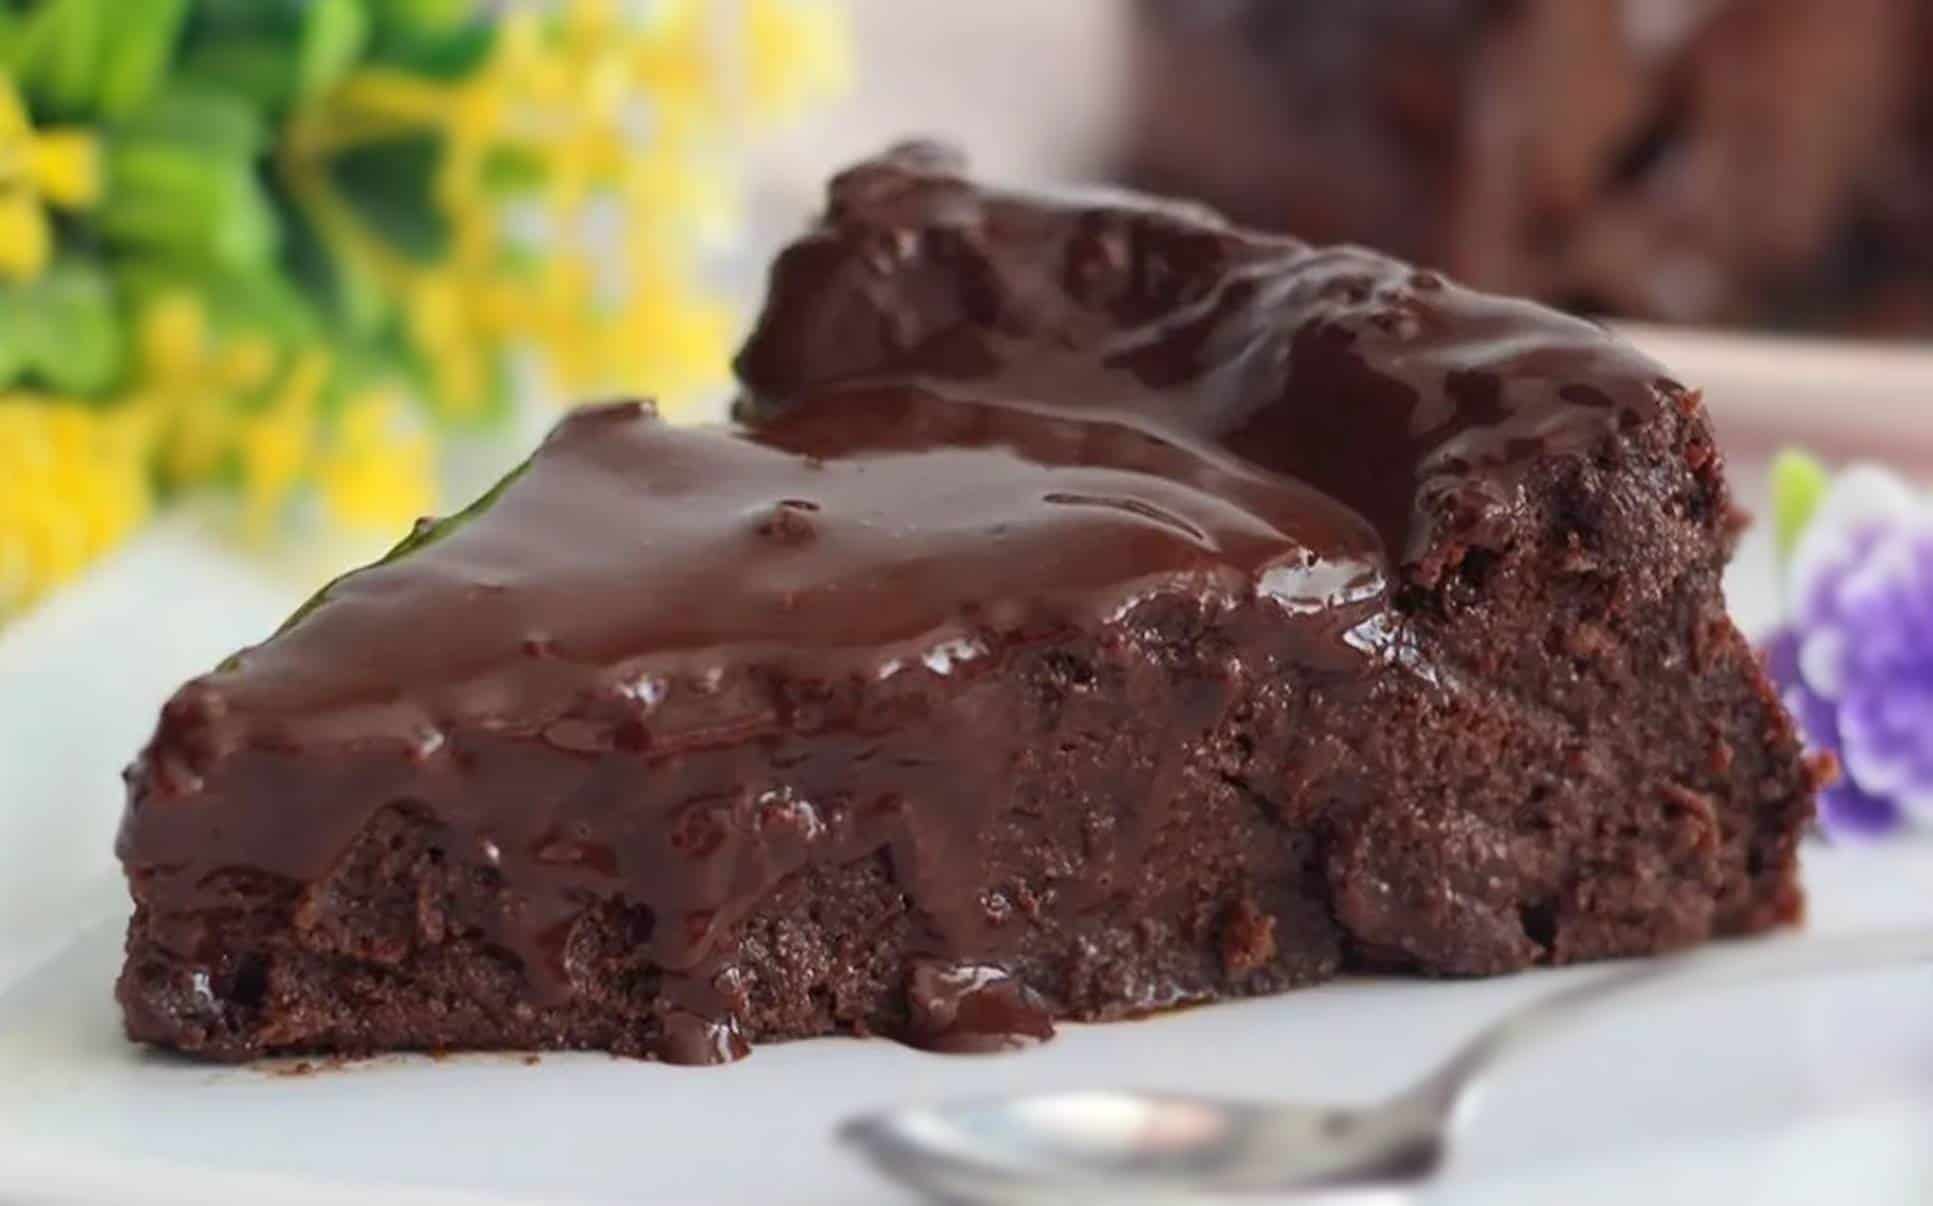 Chef revela como fazer um bolo de chocolate úmido perfeito e fácil